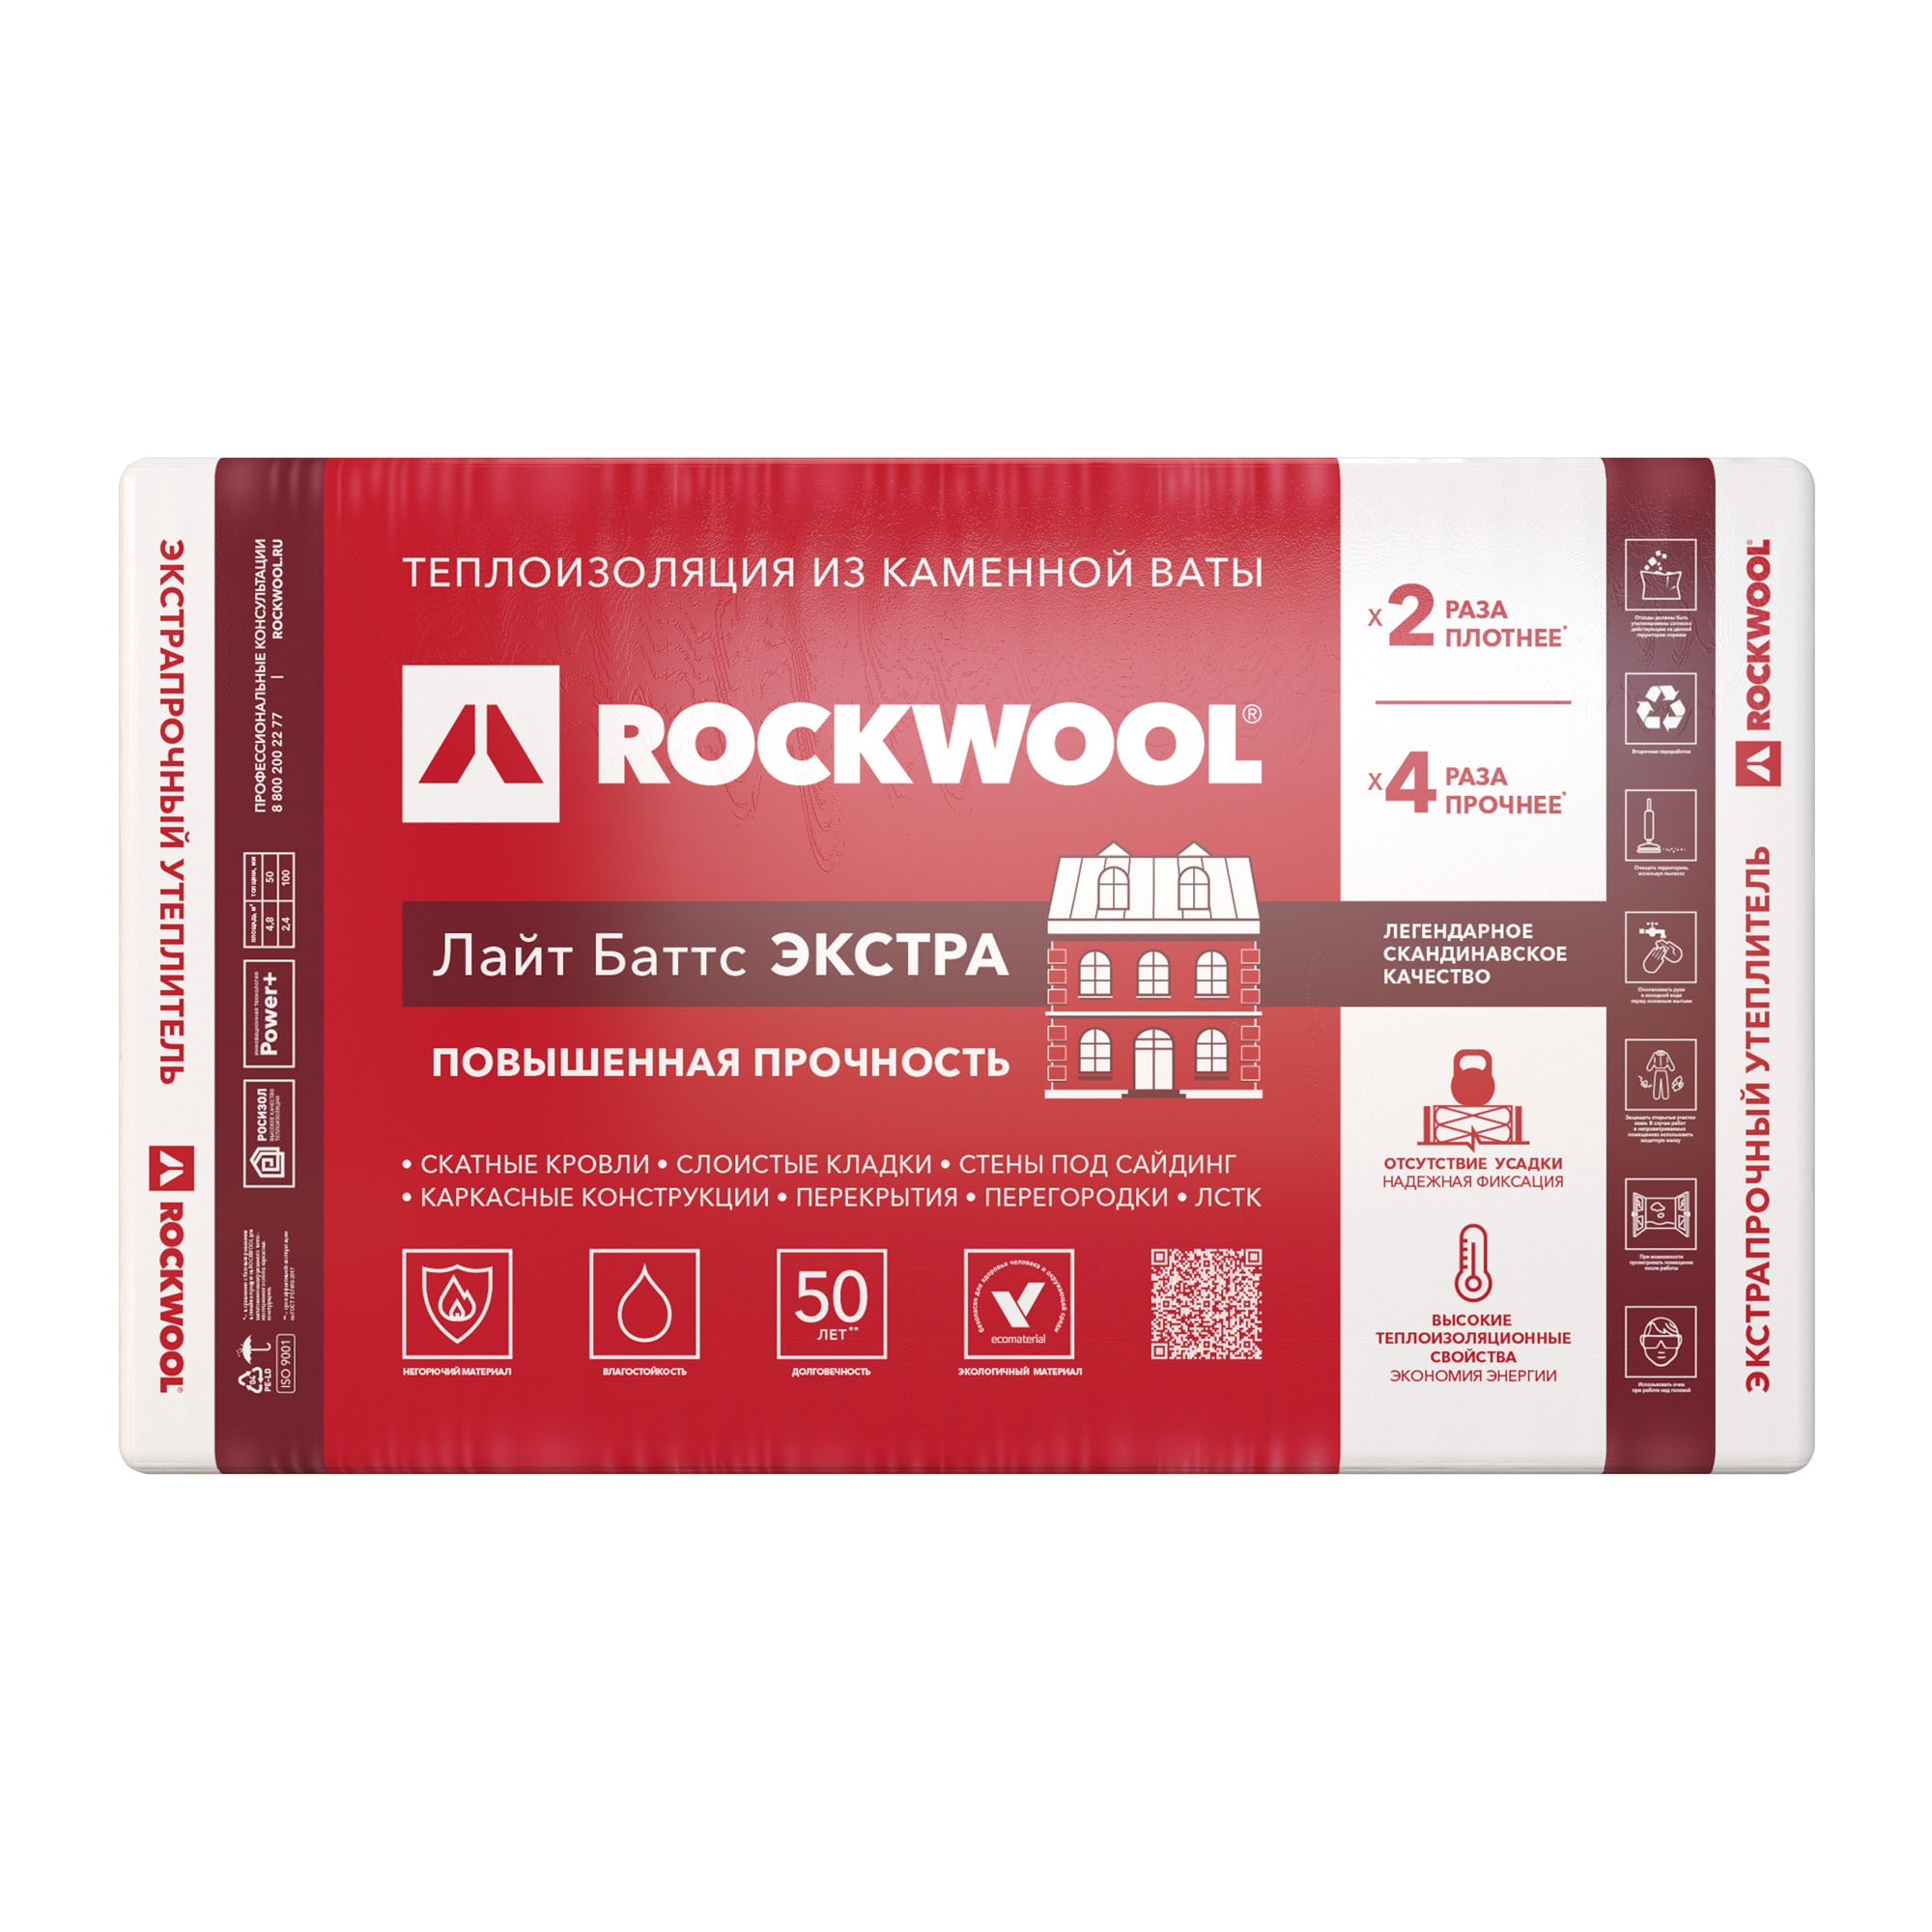  Rockwool    45 100060050  (/8)